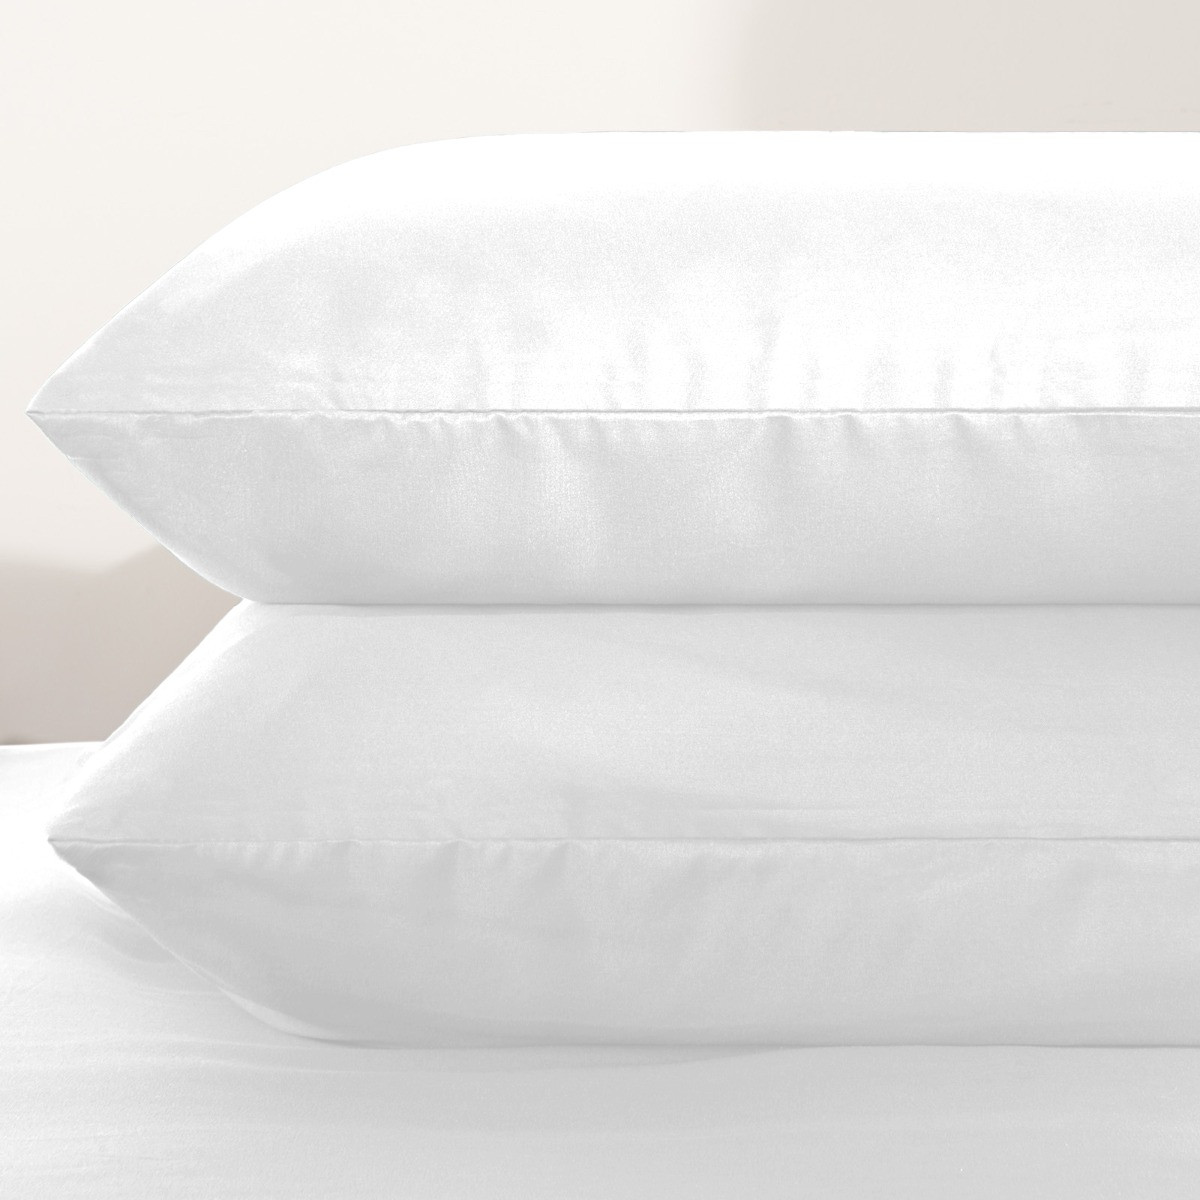 Brentfords Plain Duvet King Size Cover with Pillowcases - White>